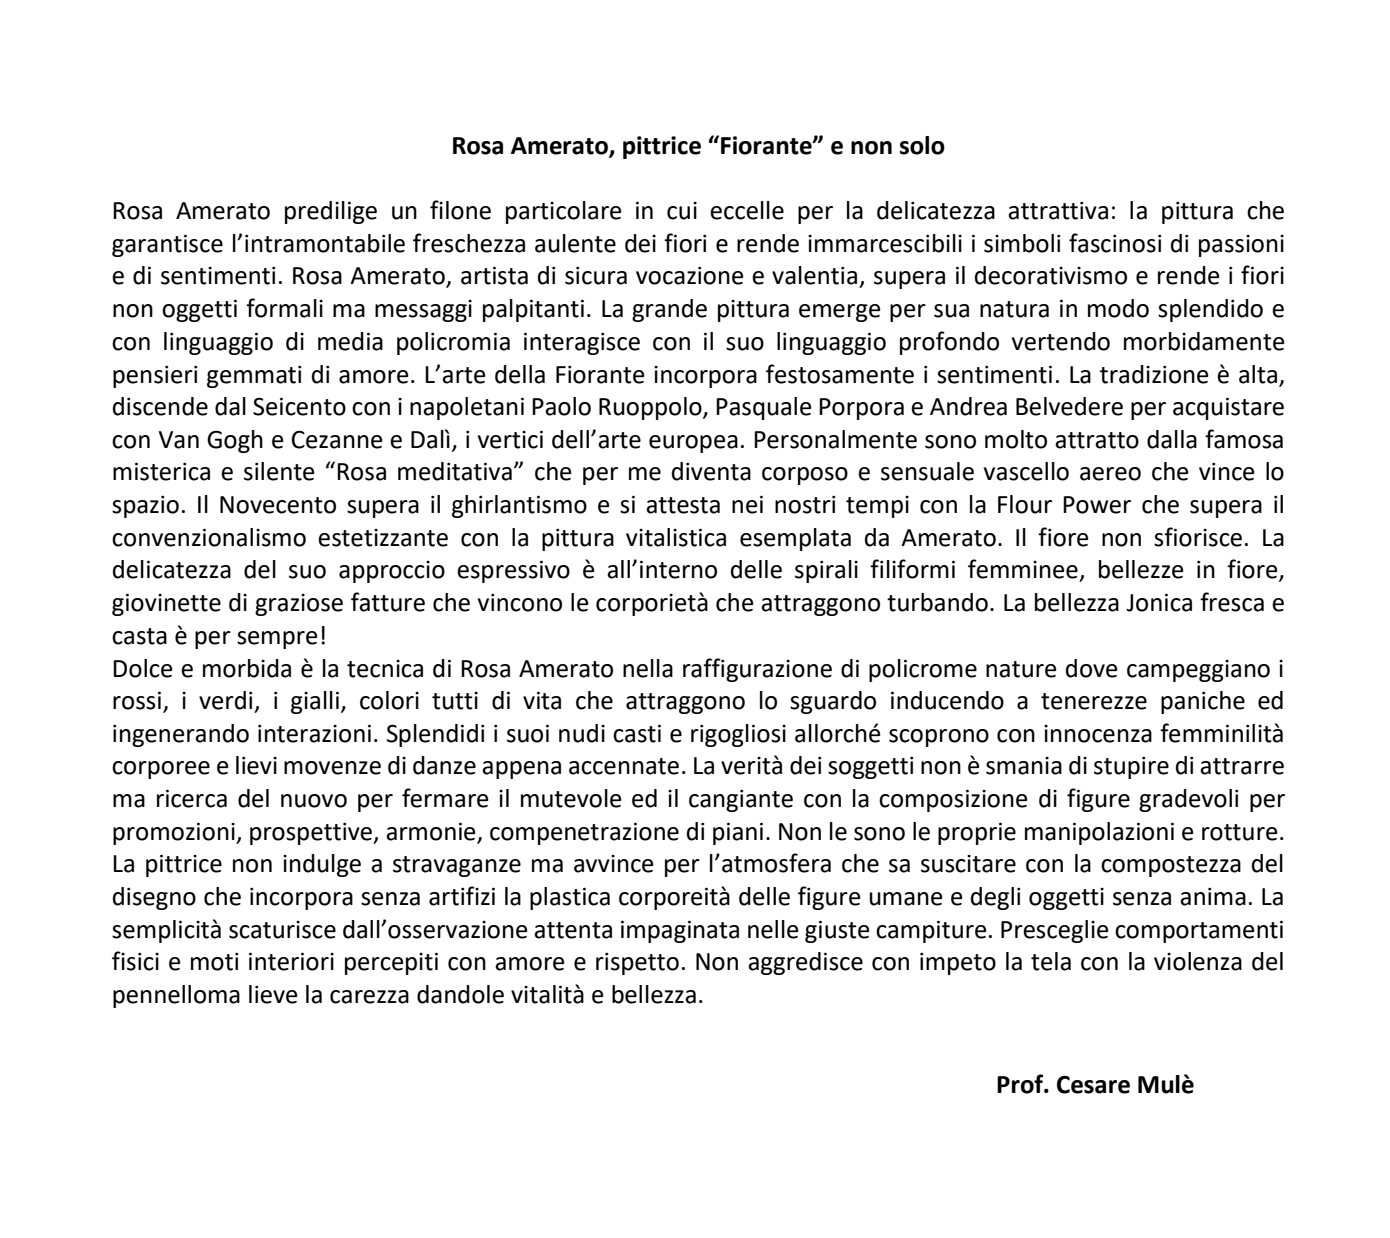 Recensione Prof. Cesare Mulè - Rosa Amerato Pittrice Fiorante e non solo - Mostra Arte e Cultura nei luoghi della Magna Graecia - Catanzaro 2010